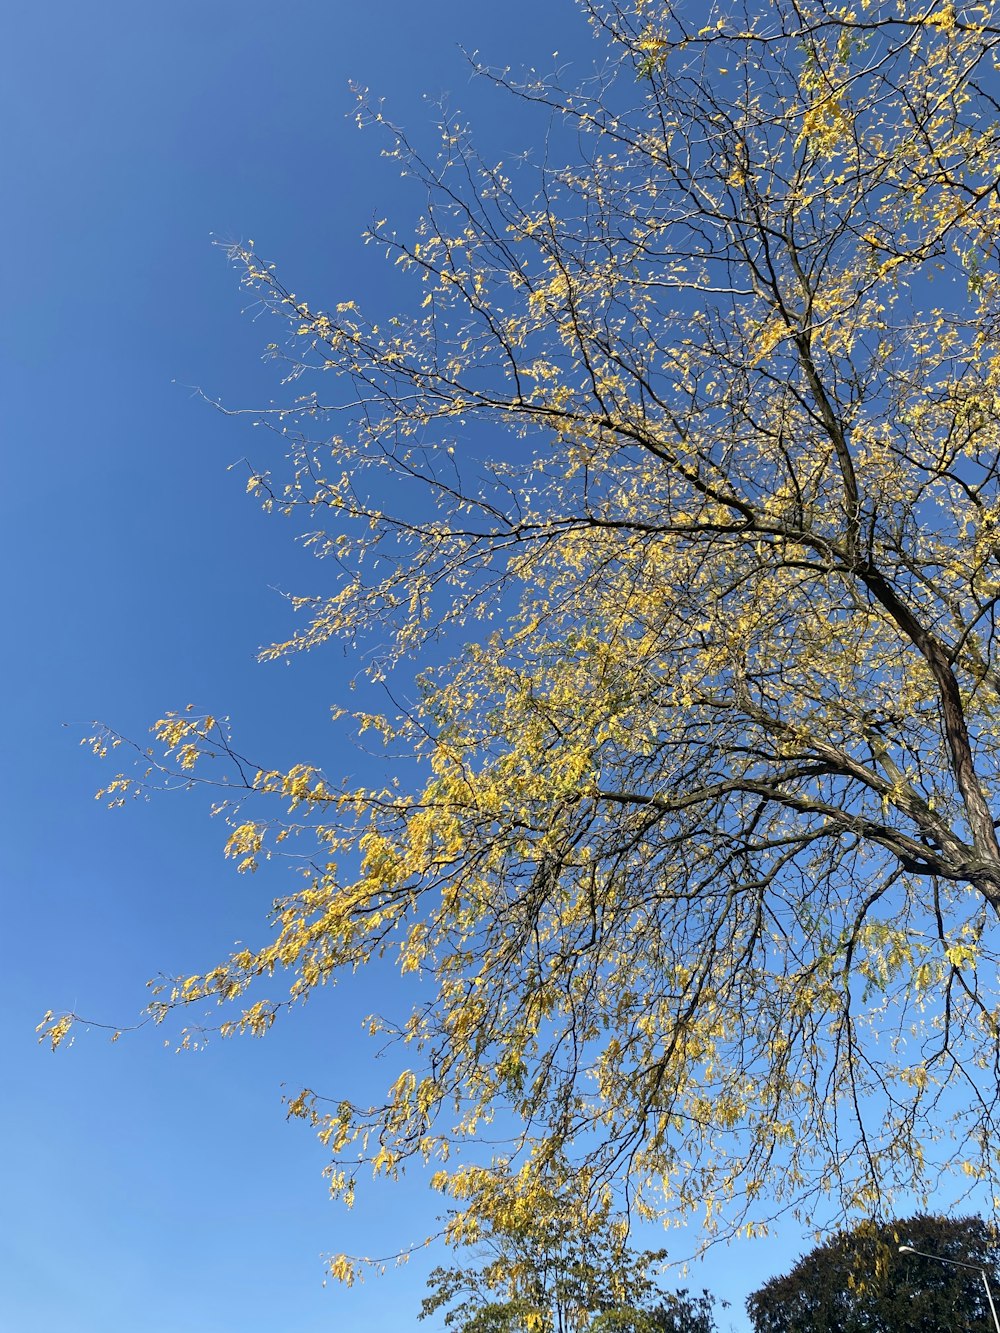 Un árbol con hojas amarillas y un cielo azul en el fondo